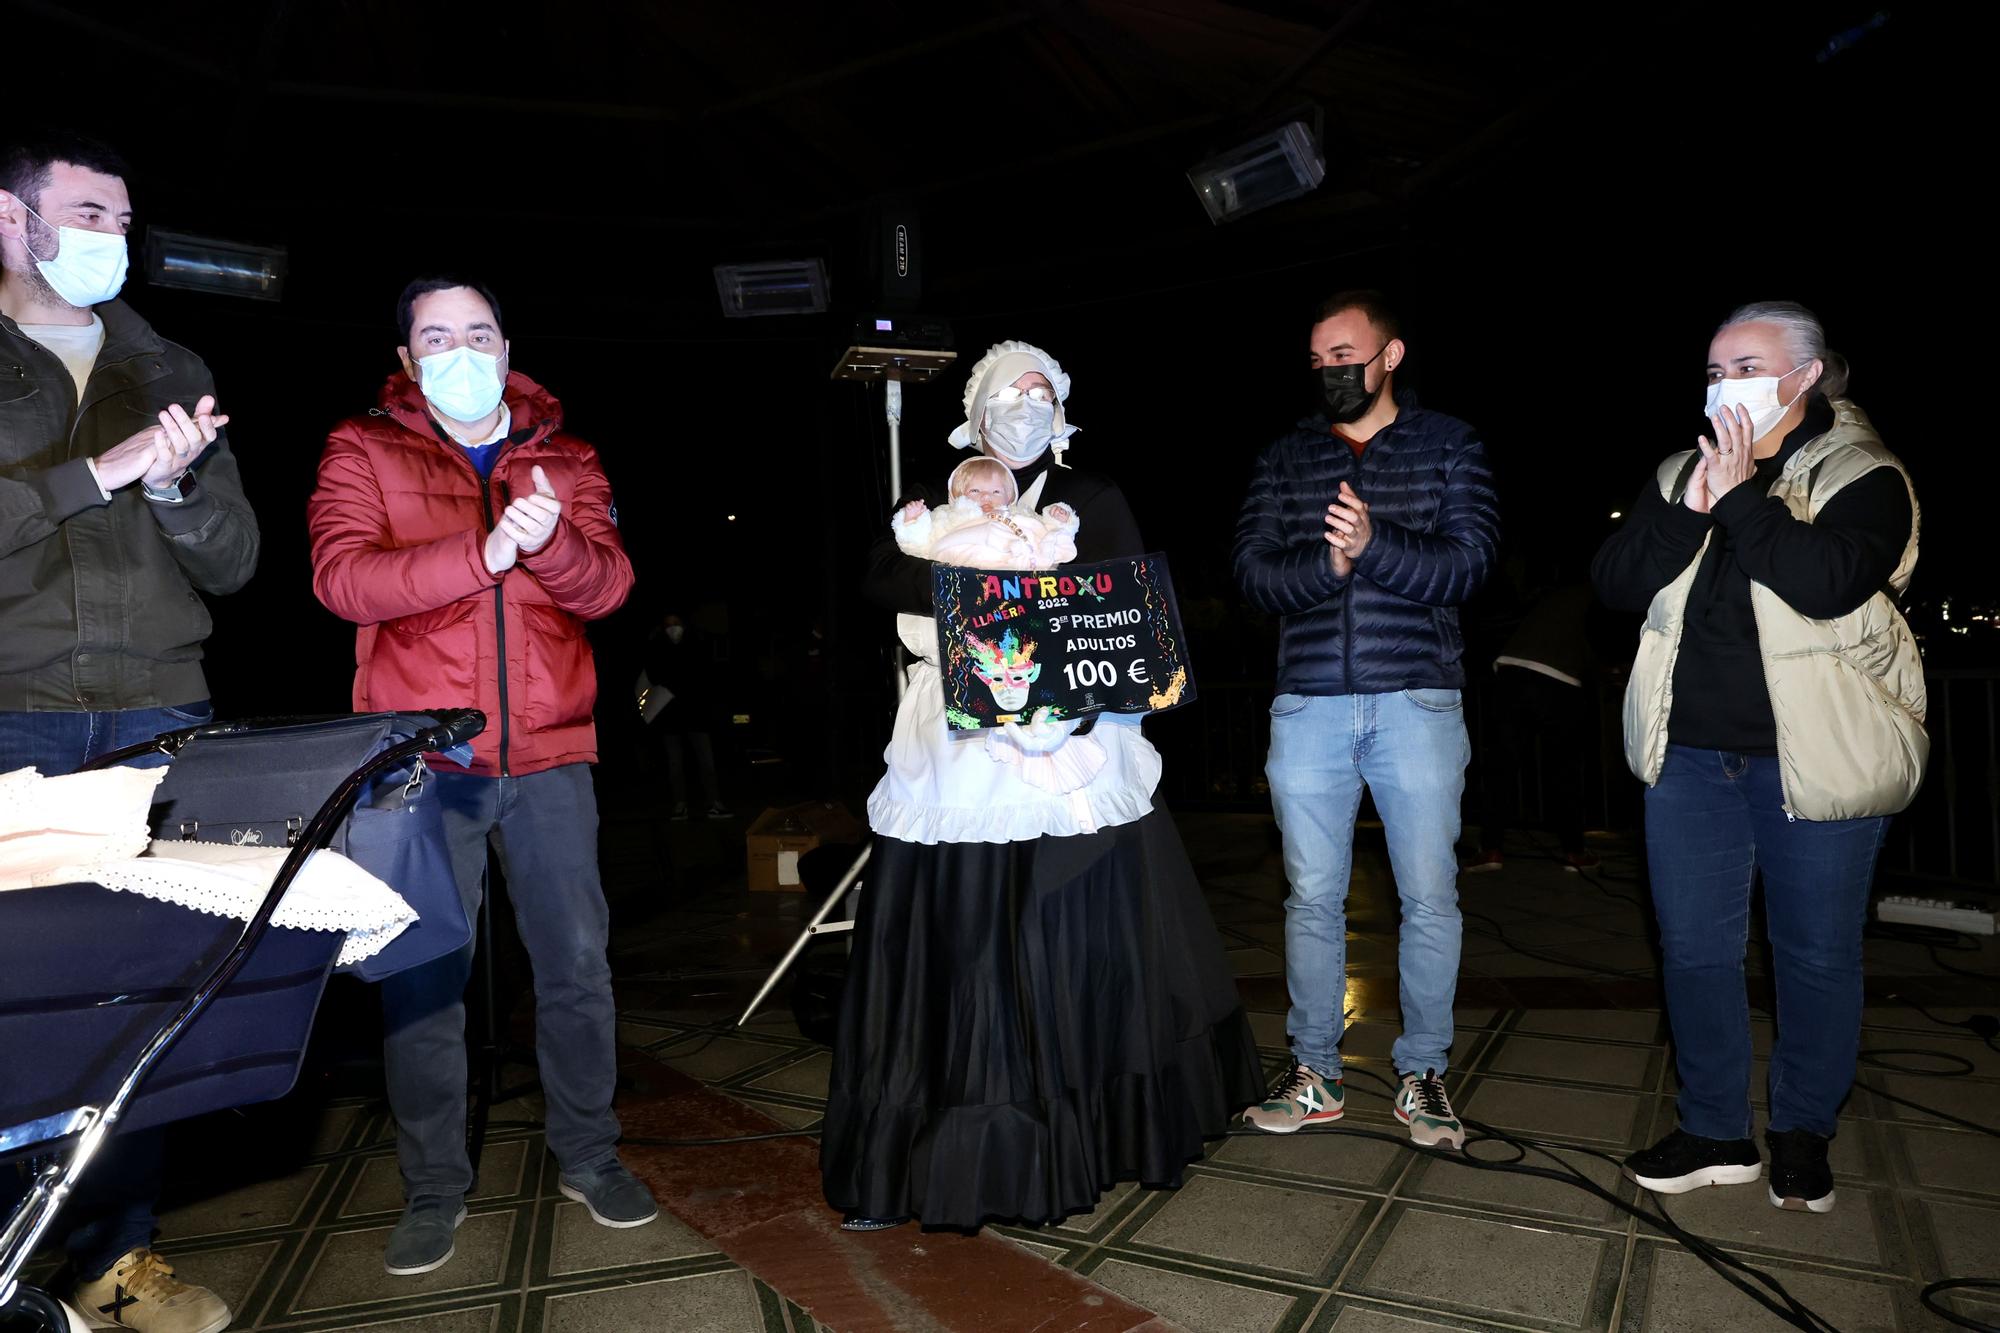 El Antroxu lo da todo en Llanera: todas las imágenes del concurso de adultos en Posada